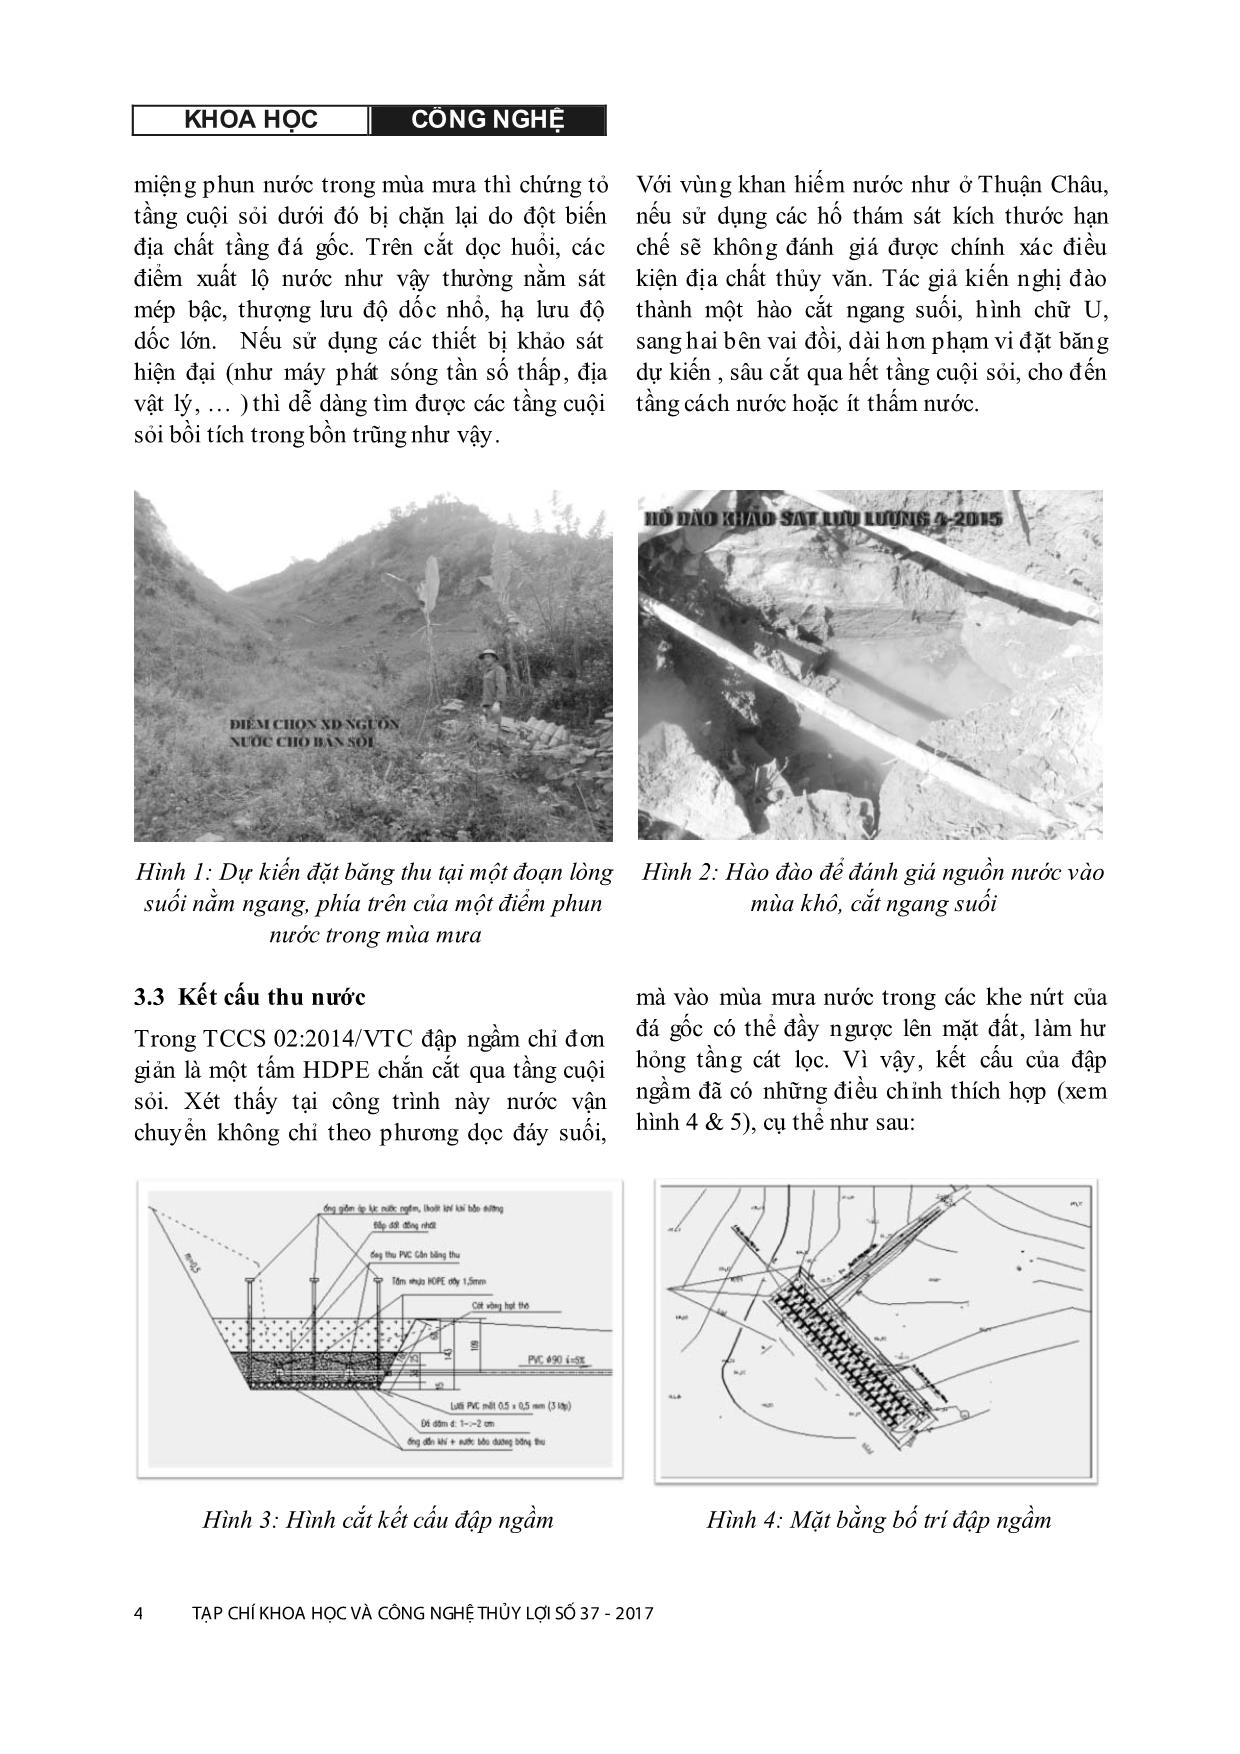 Mô hình cấp nước sinh hoạt cho vùng khan hiếm nước tỉnh Sơn La theo công nghệ đập ngầm - hào thu nước trang 4